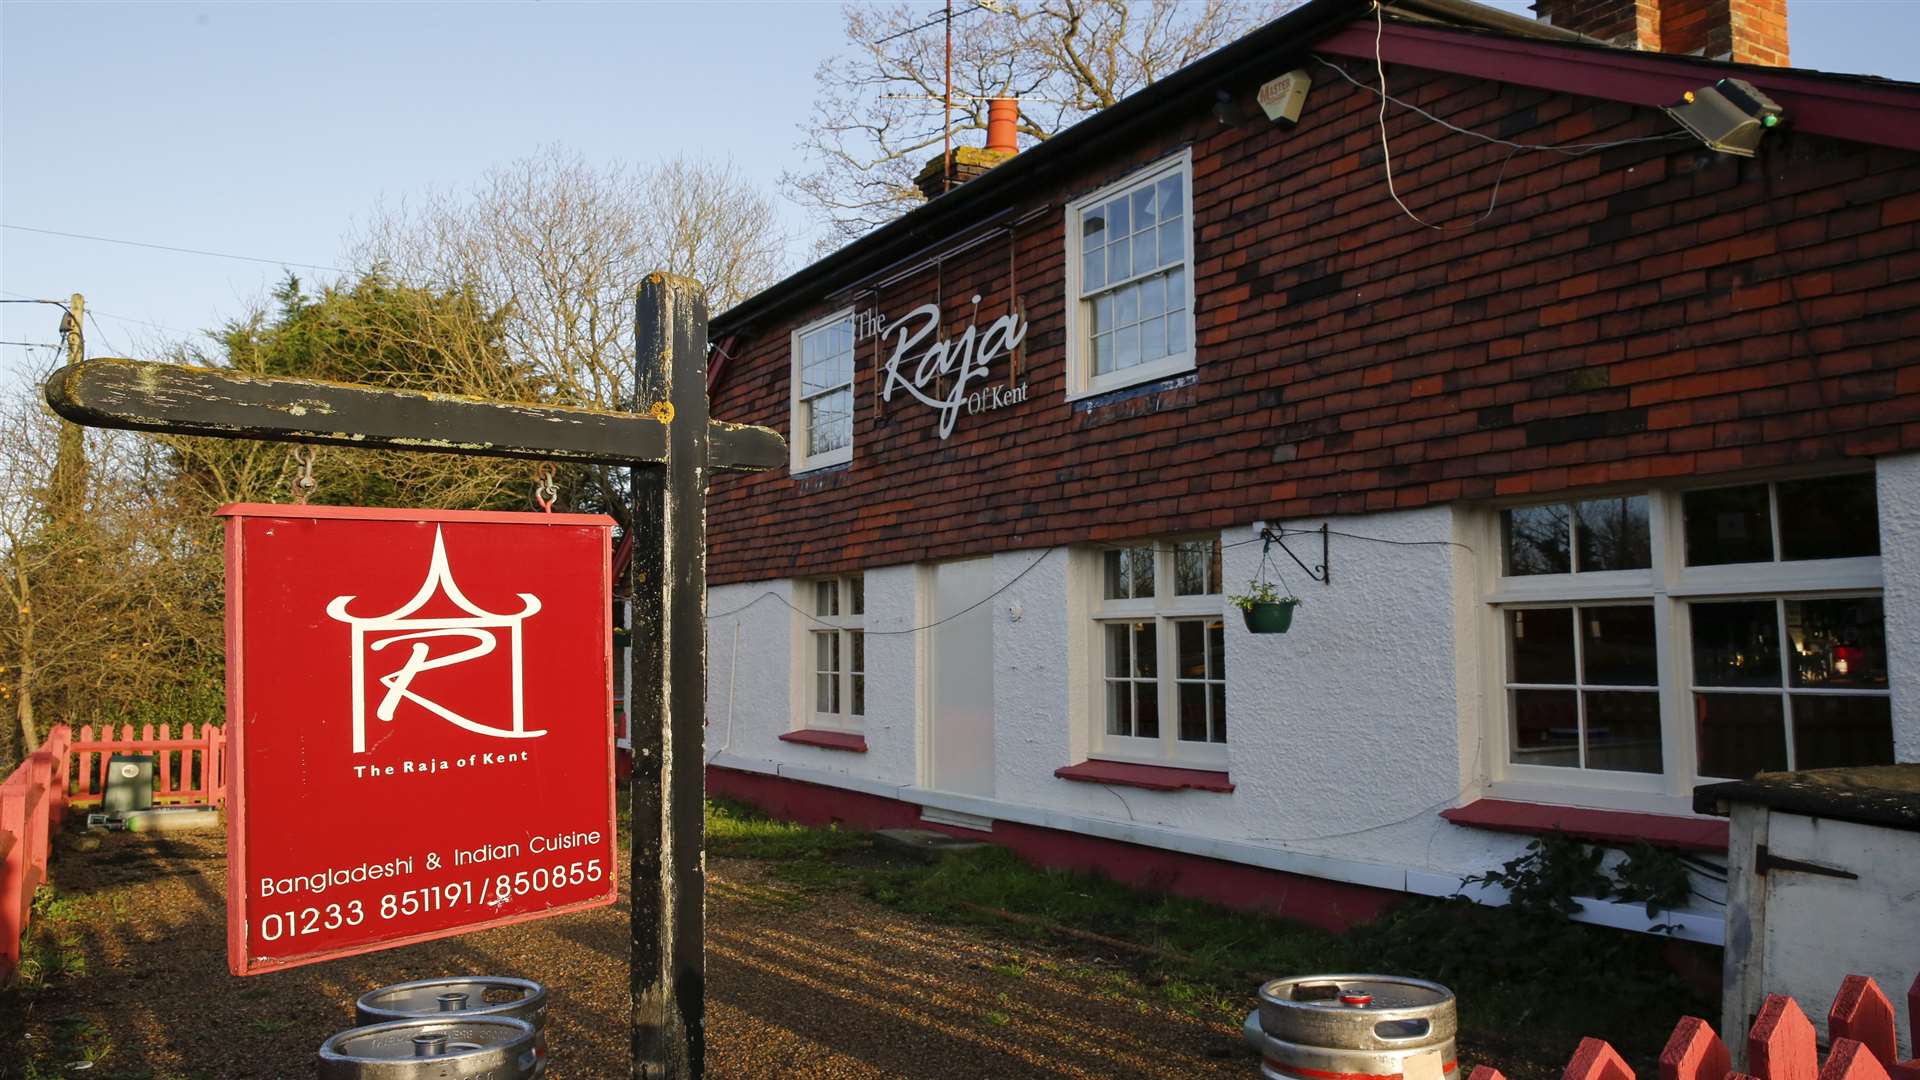 The Raja of Kent restaurant in High Halden